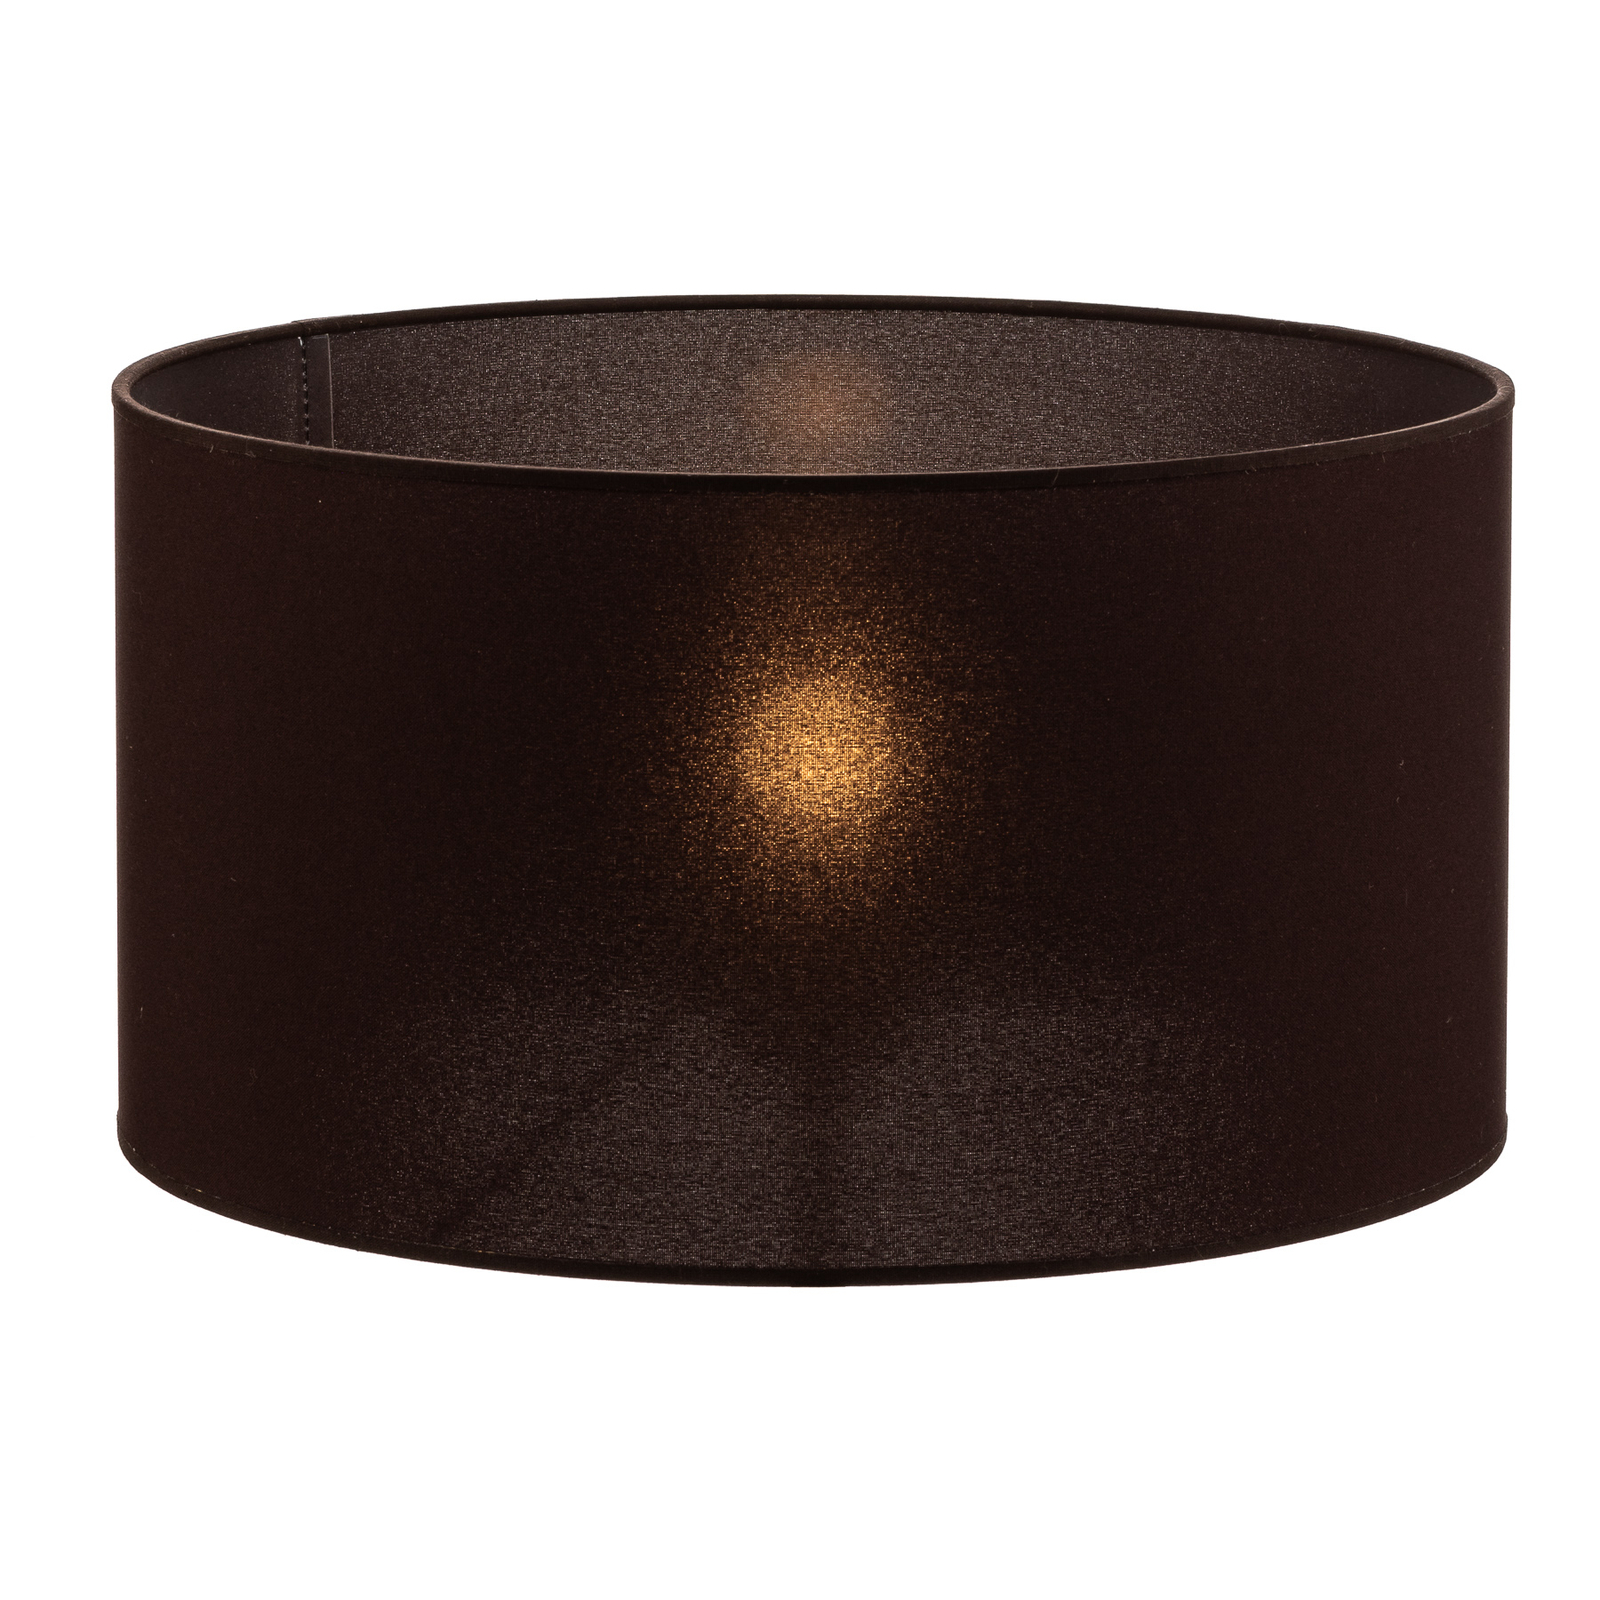 Roller lámpaernyő sötétbarna Ø 40 cm, 22 cm magas